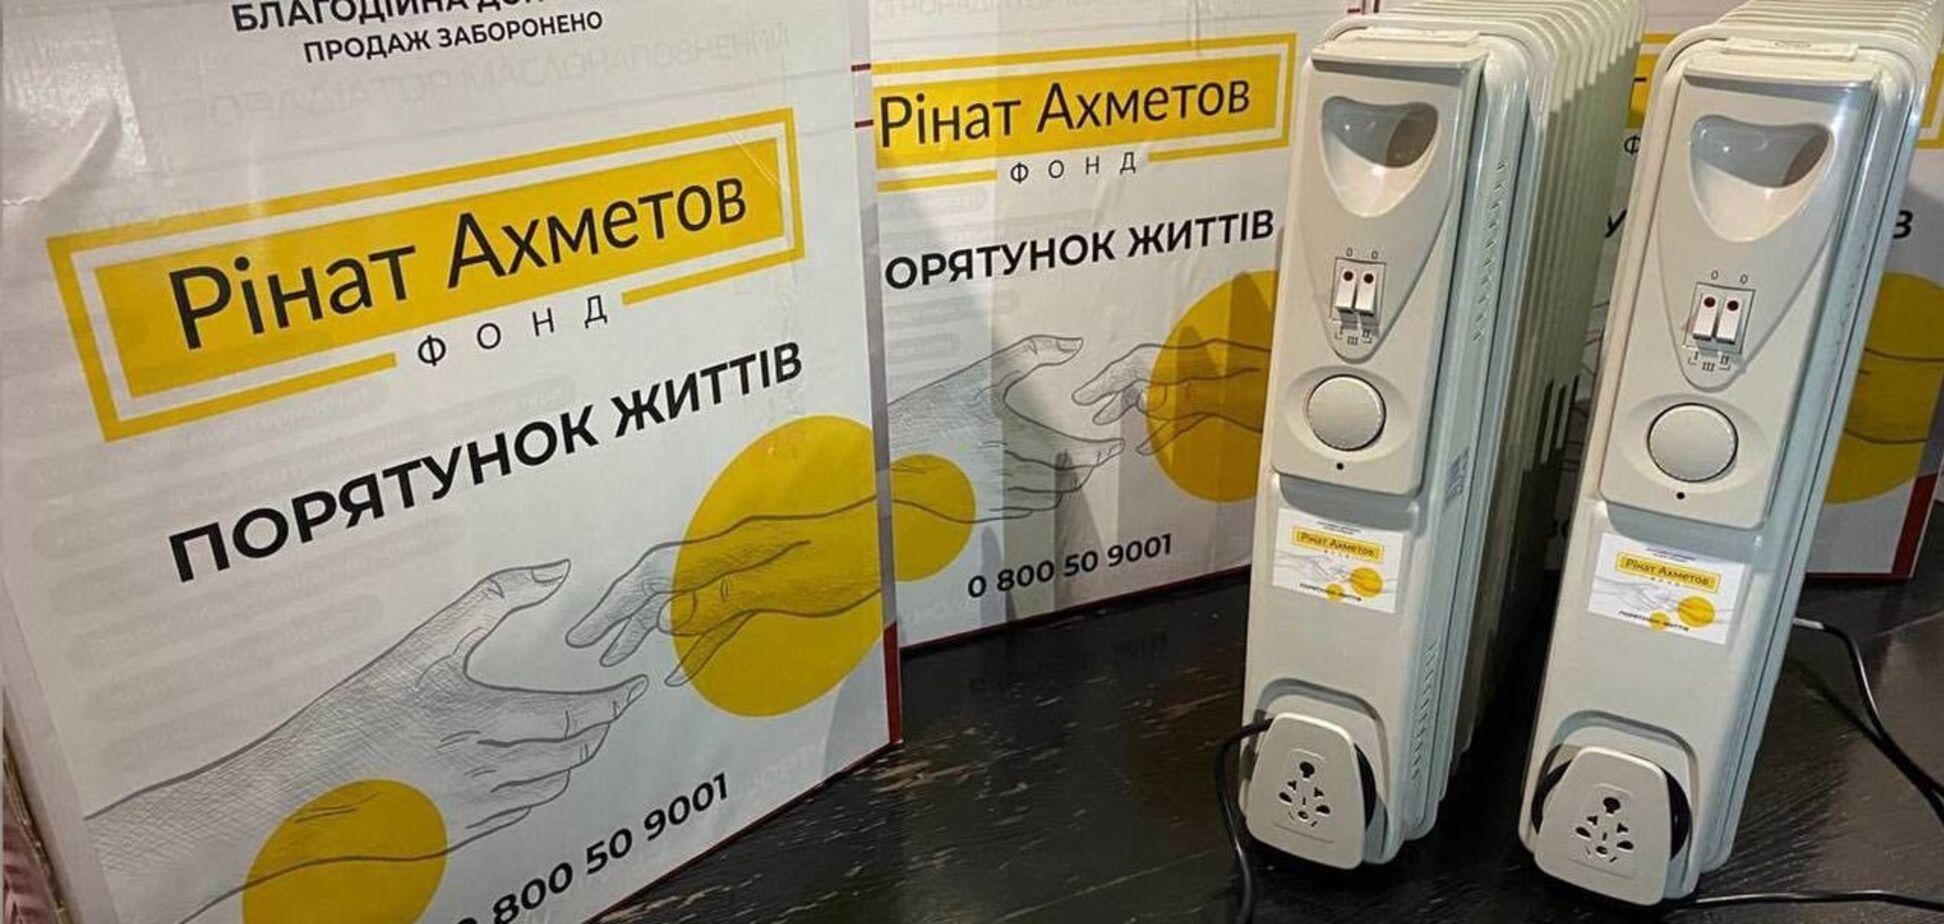 Жители Донбасса получили партию обогревателей от Фонда Ахметова